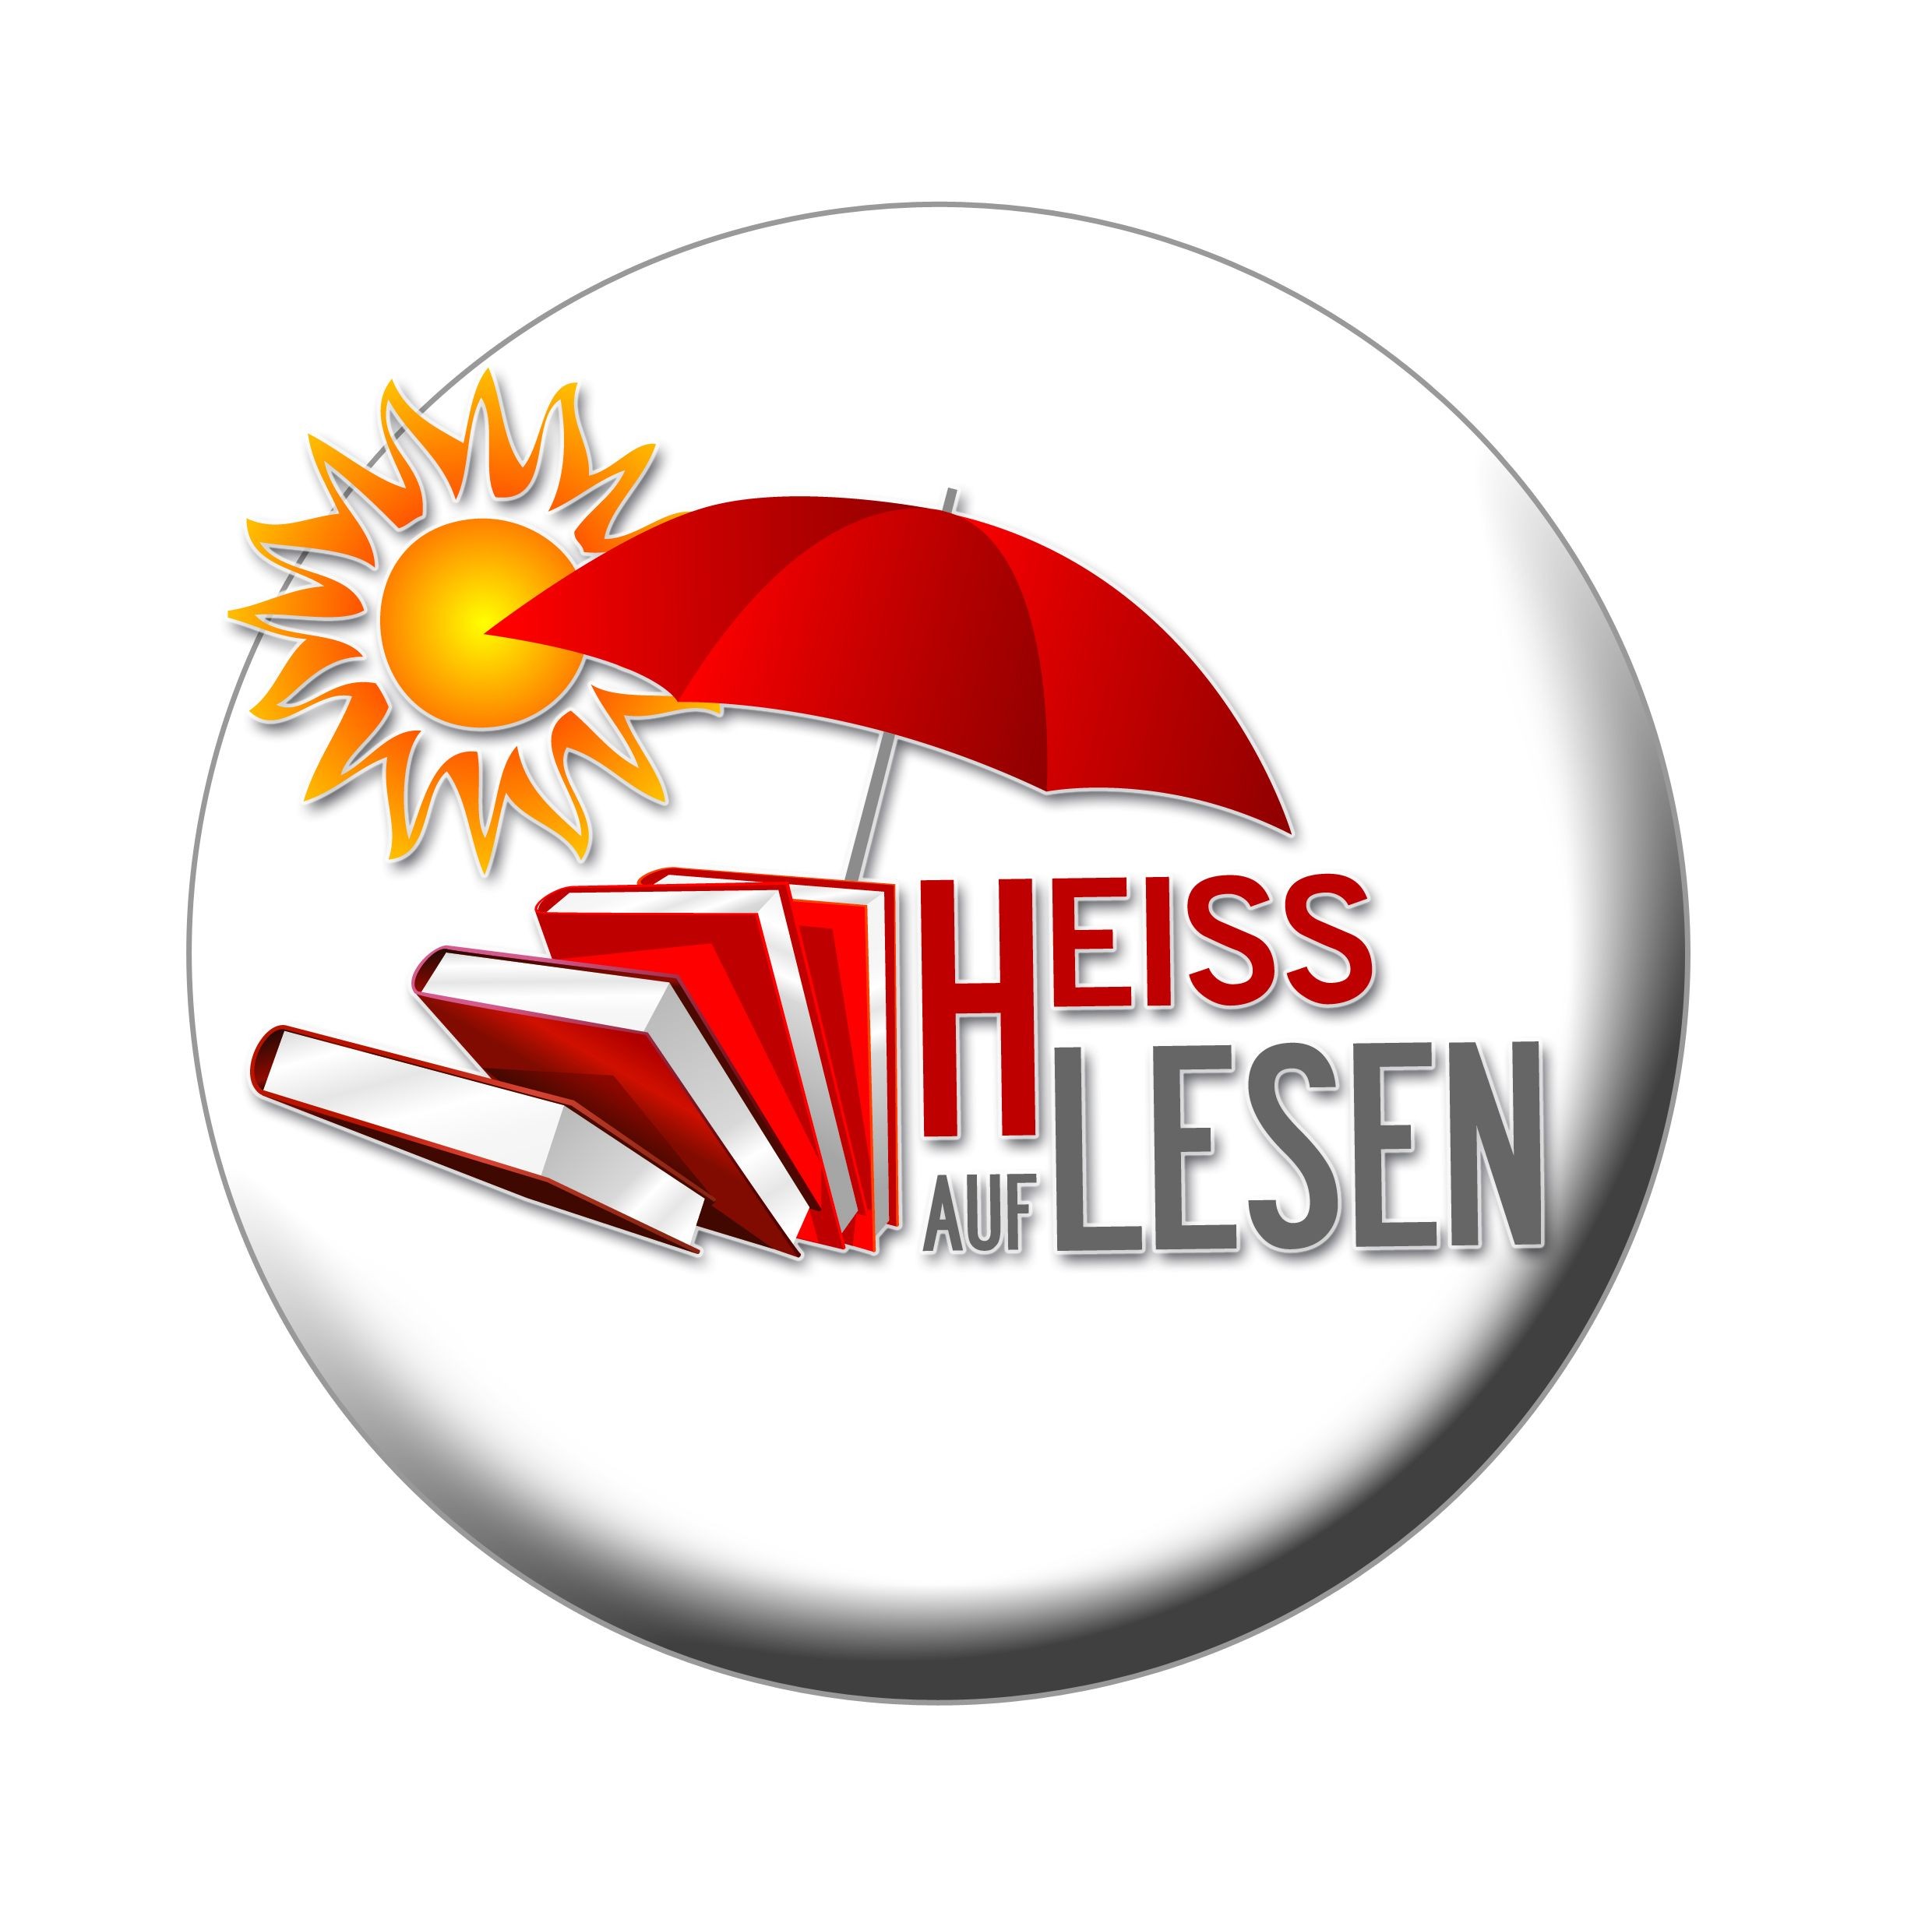  Logo der Sommerleseclubaktion HEISS AUF LESEN 